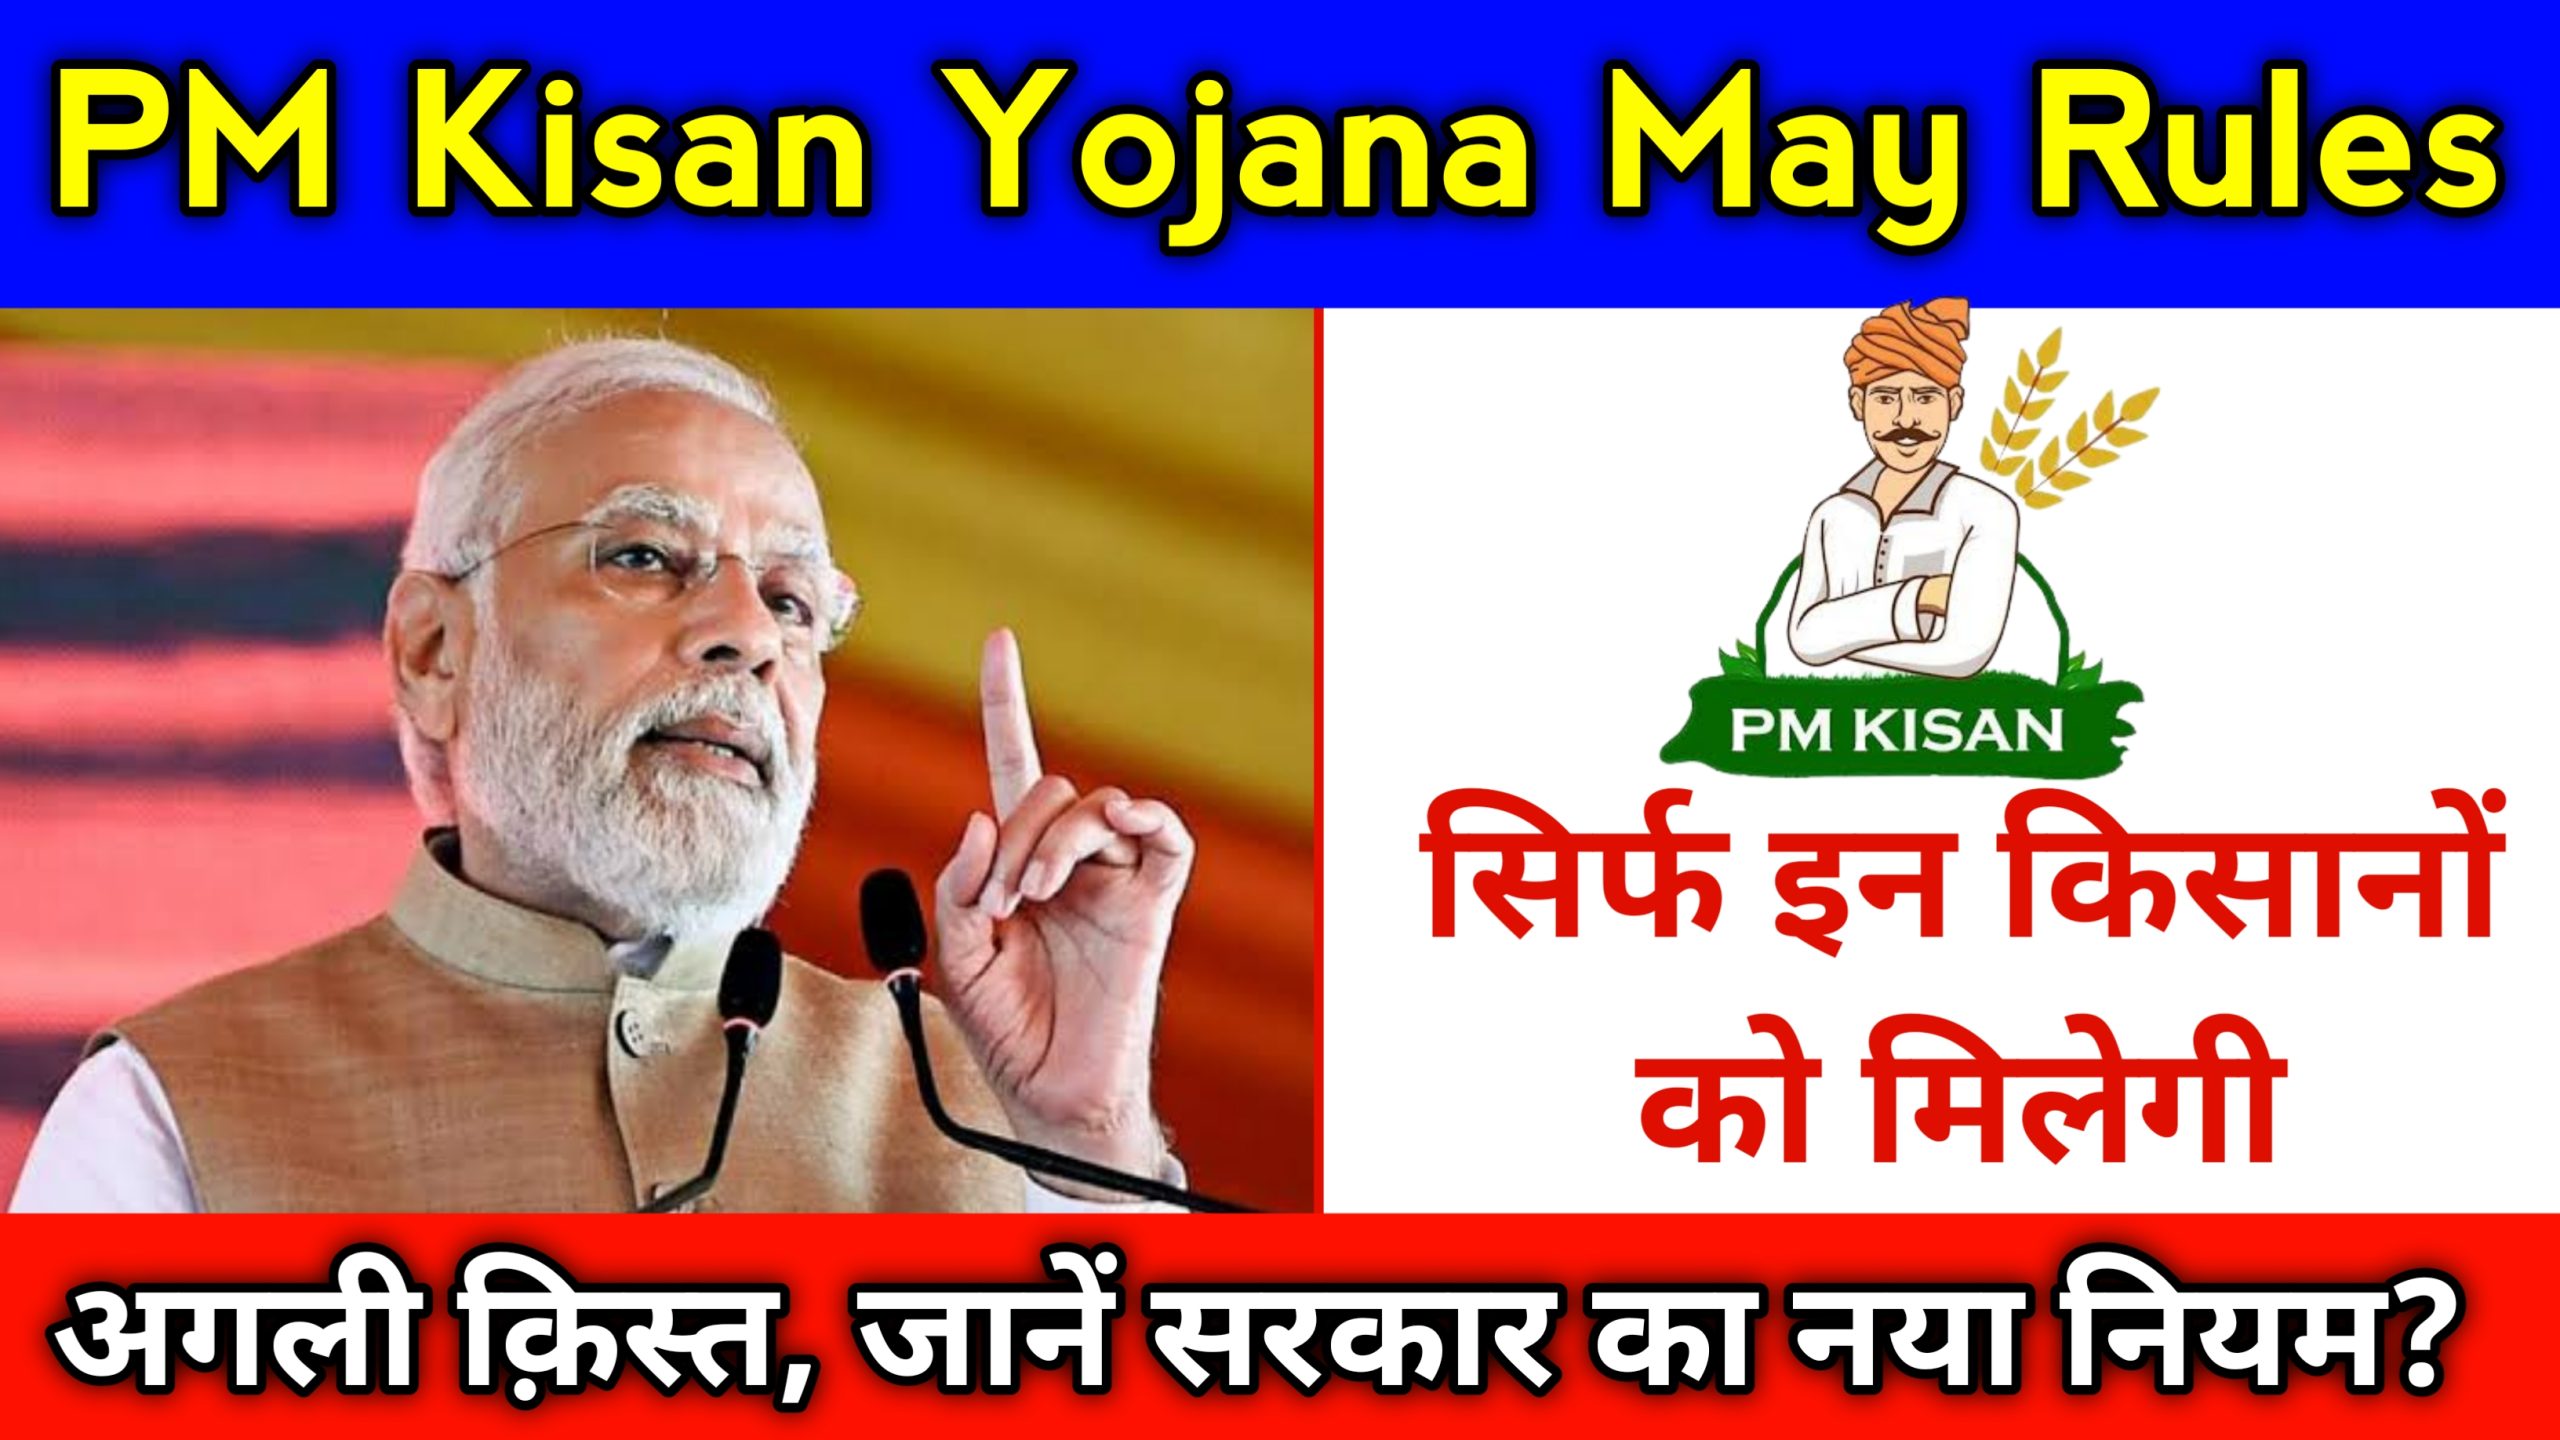 PM Kisan Yojana May Rules 